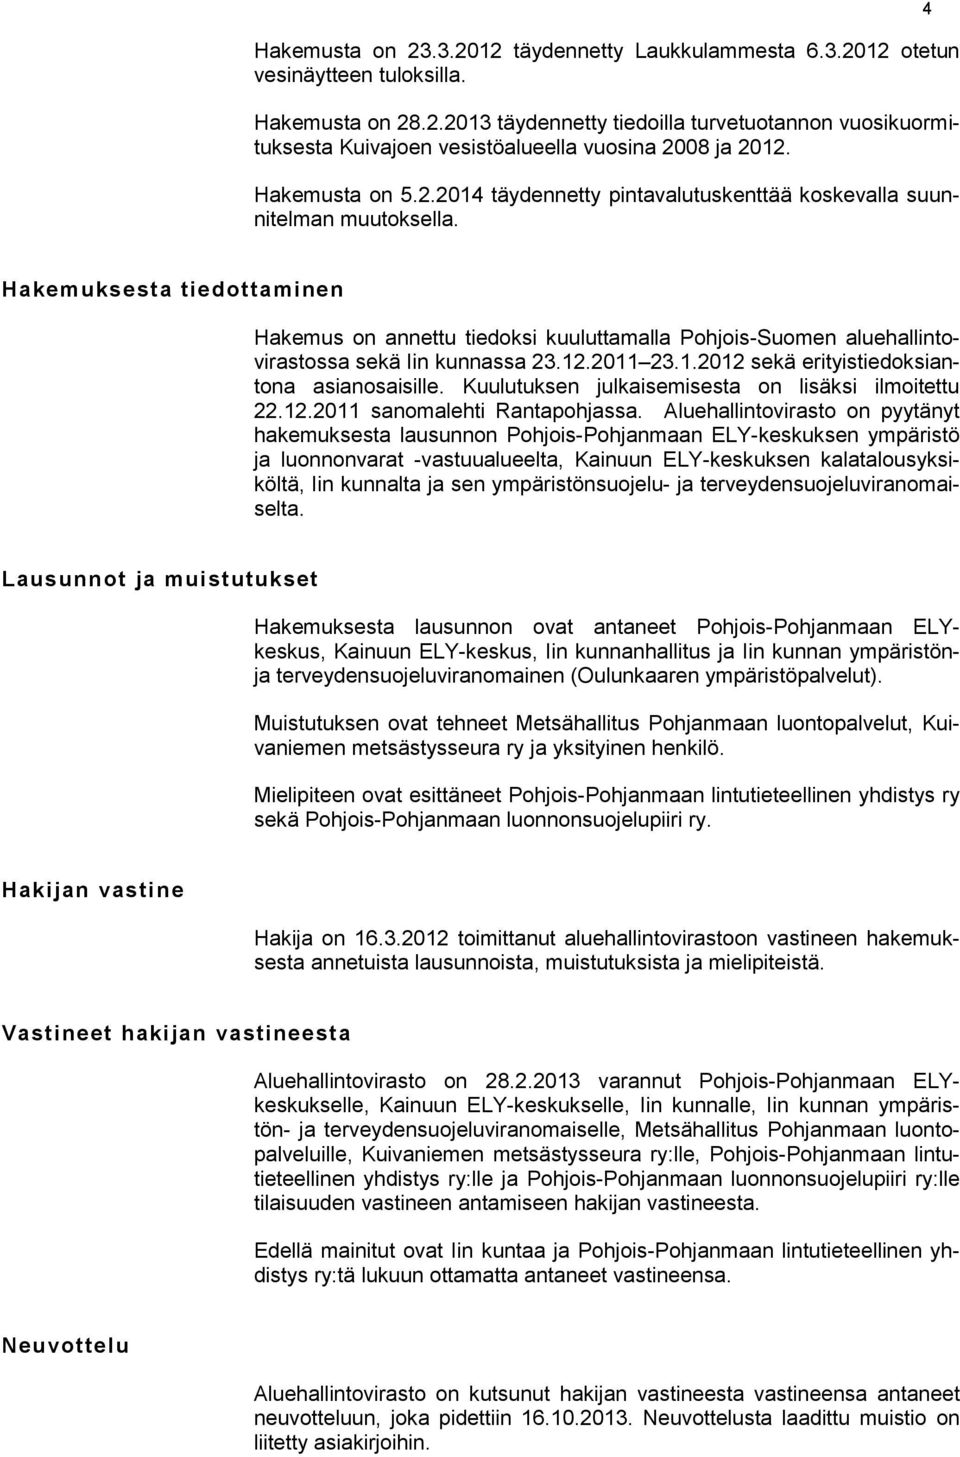 4 Hakemuksesta tiedottaminen Hakemus on annettu tiedoksi kuuluttamalla Pohjois-Suomen aluehallintovirastossa sekä Iin kunnassa 23.12.2011 23.1.2012 sekä erityistiedoksiantona asianosaisille.